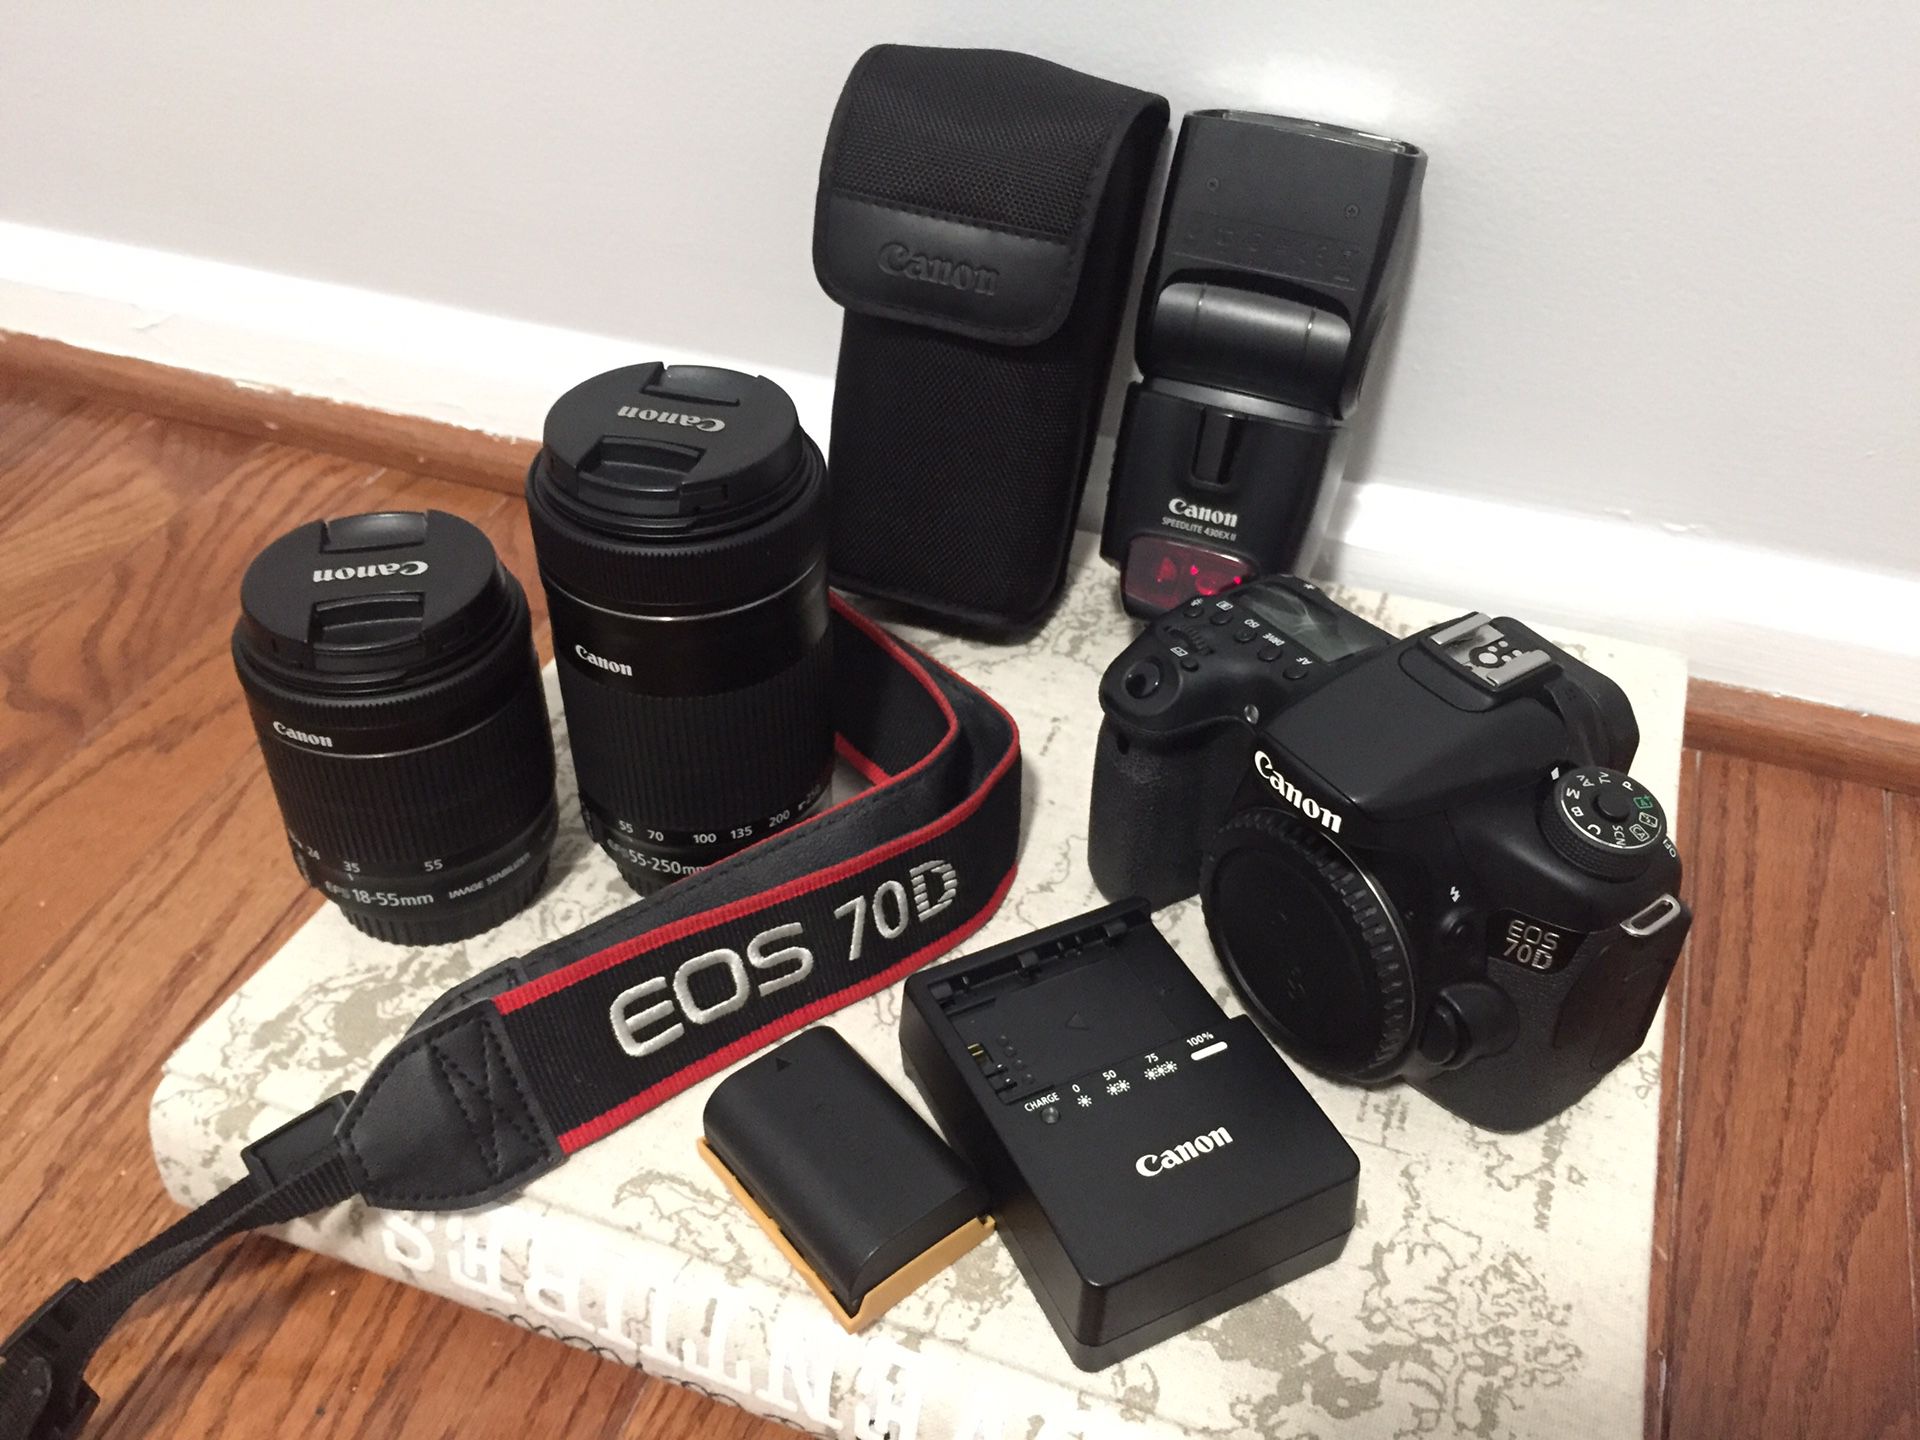 Canon Camera 70D Kit